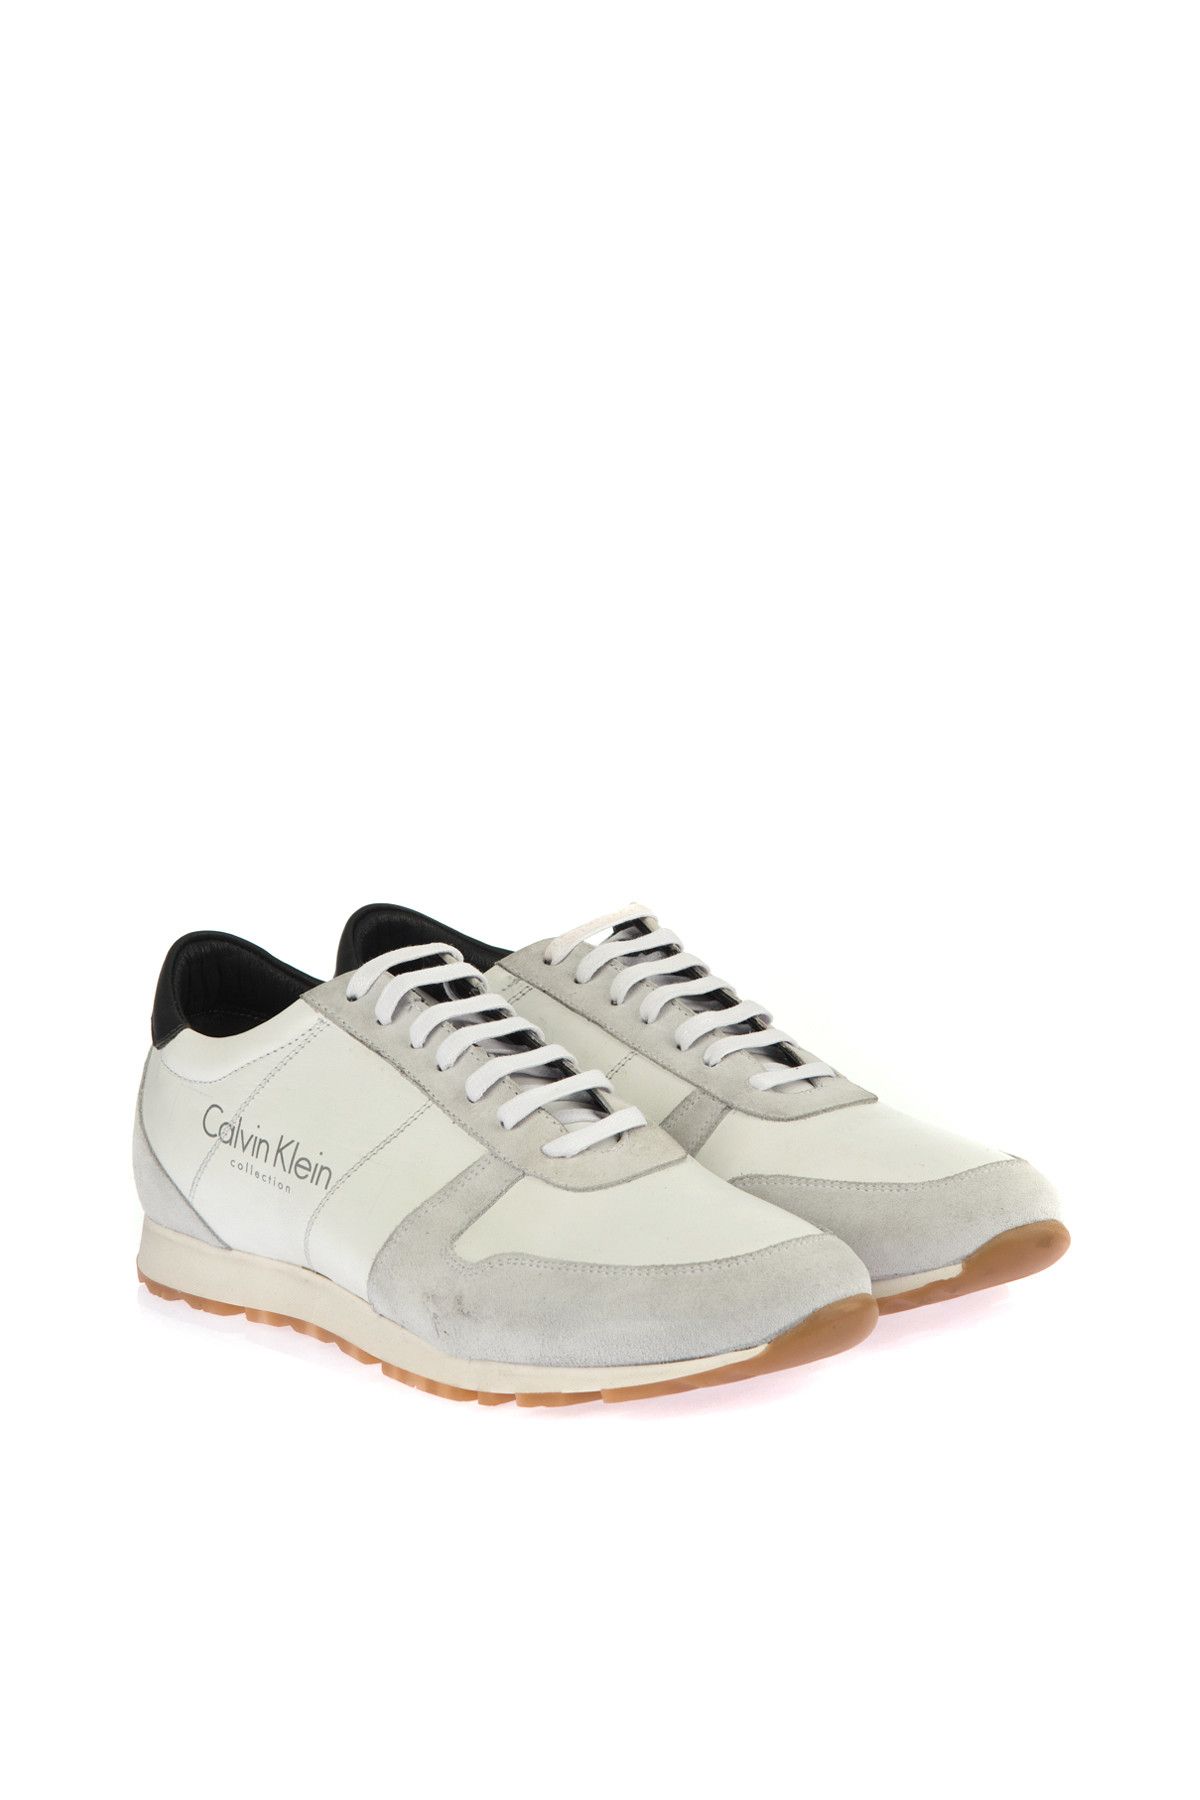 Calvin Klein Beyaz Erkek Ayakkabı K4593-A